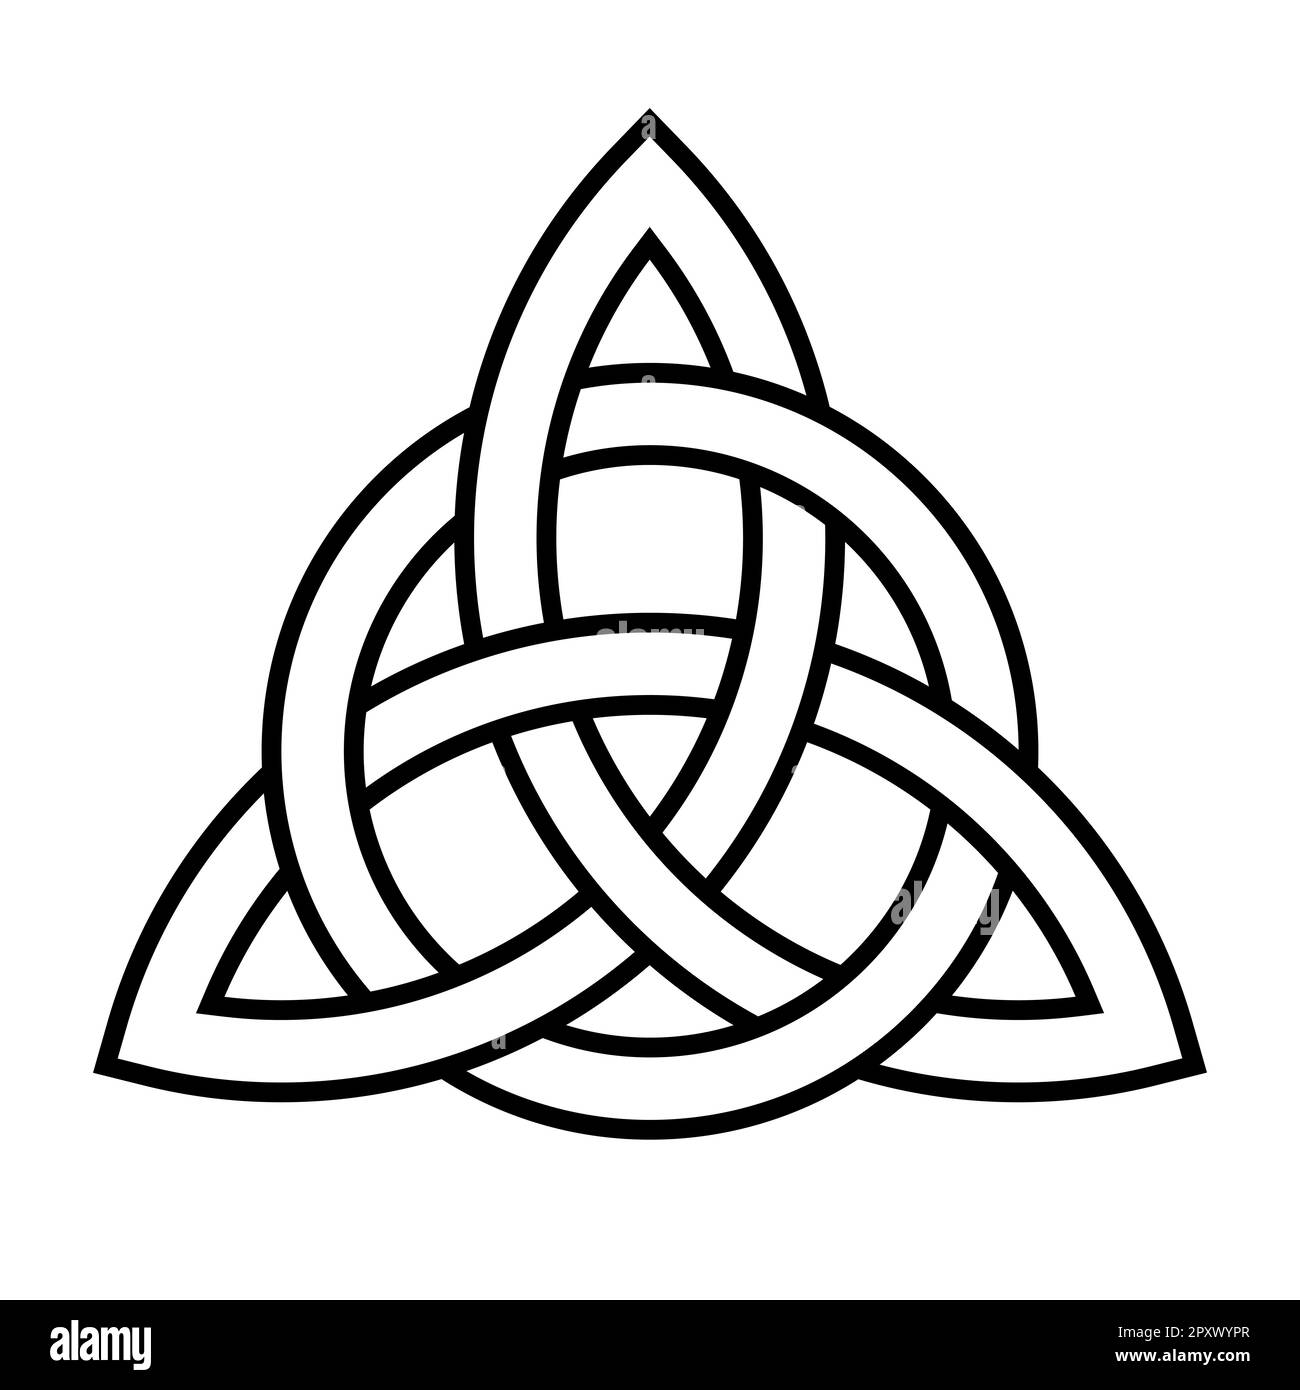 Triquetra con cerchio interlacciato. Simbolo della Trinità, formato da archi interlacciati, che rappresentano il Padre, il Figlio e lo Spirito Santo inseparabilmente legati. Foto Stock